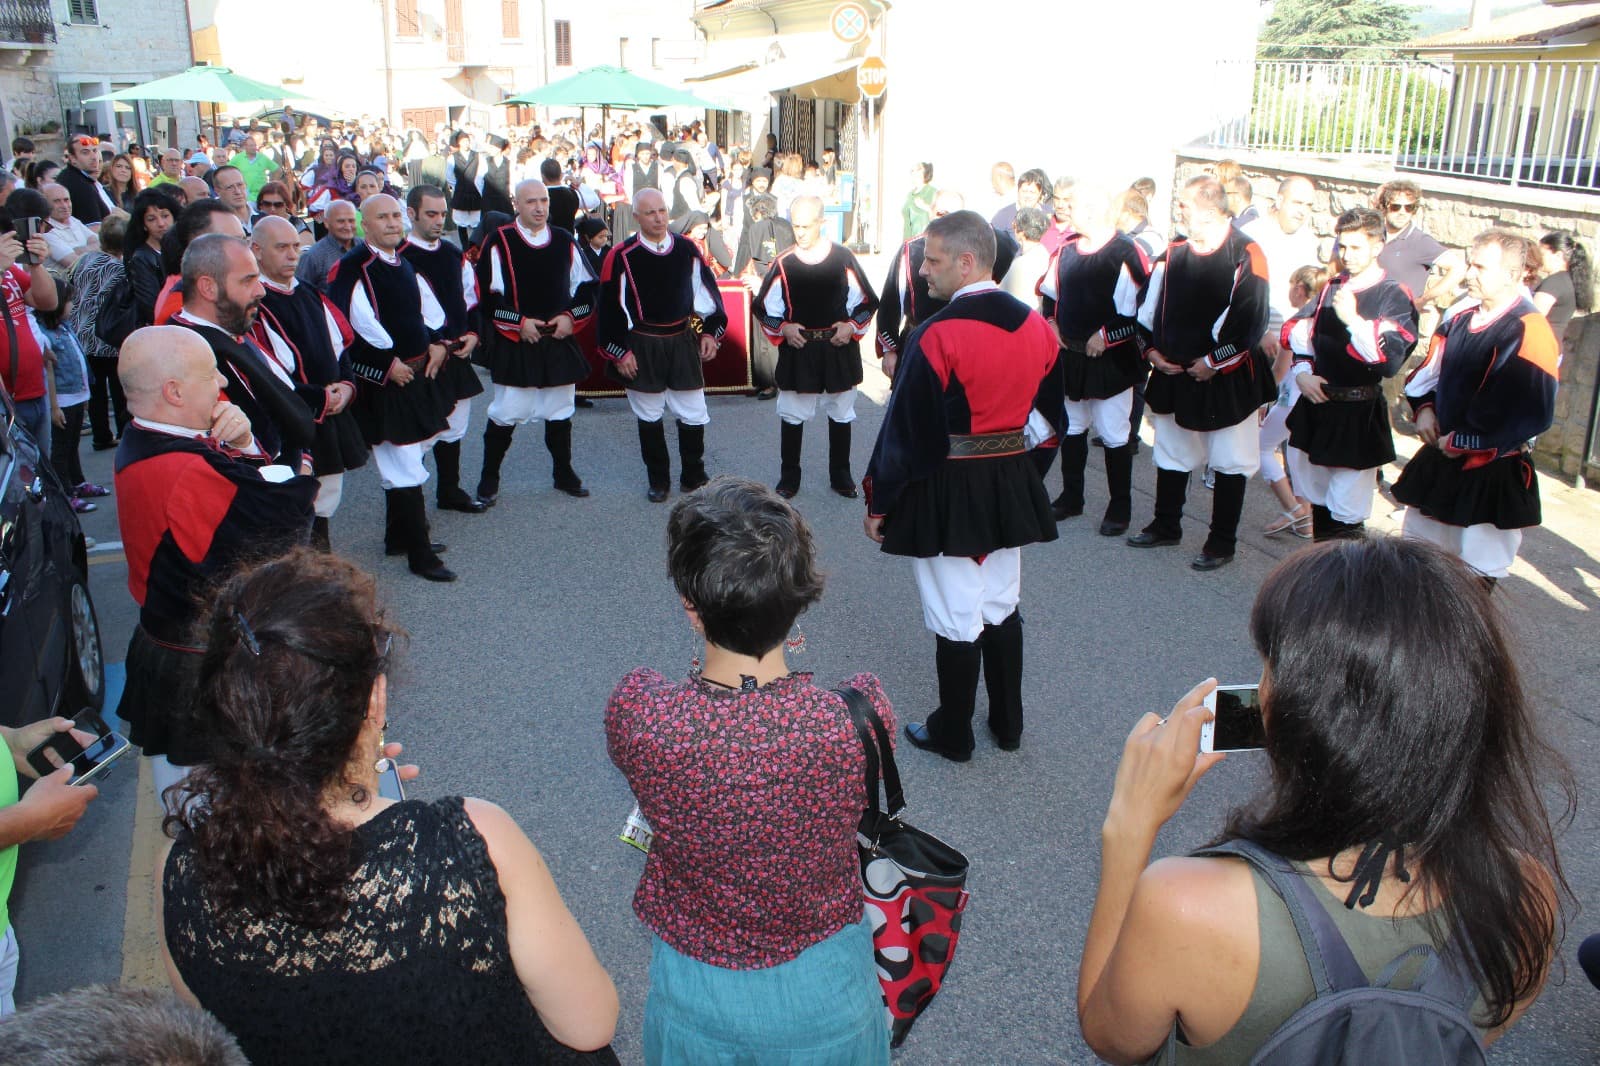 Luras: le Domos aprono le porte alla tradizione, musica e cultura